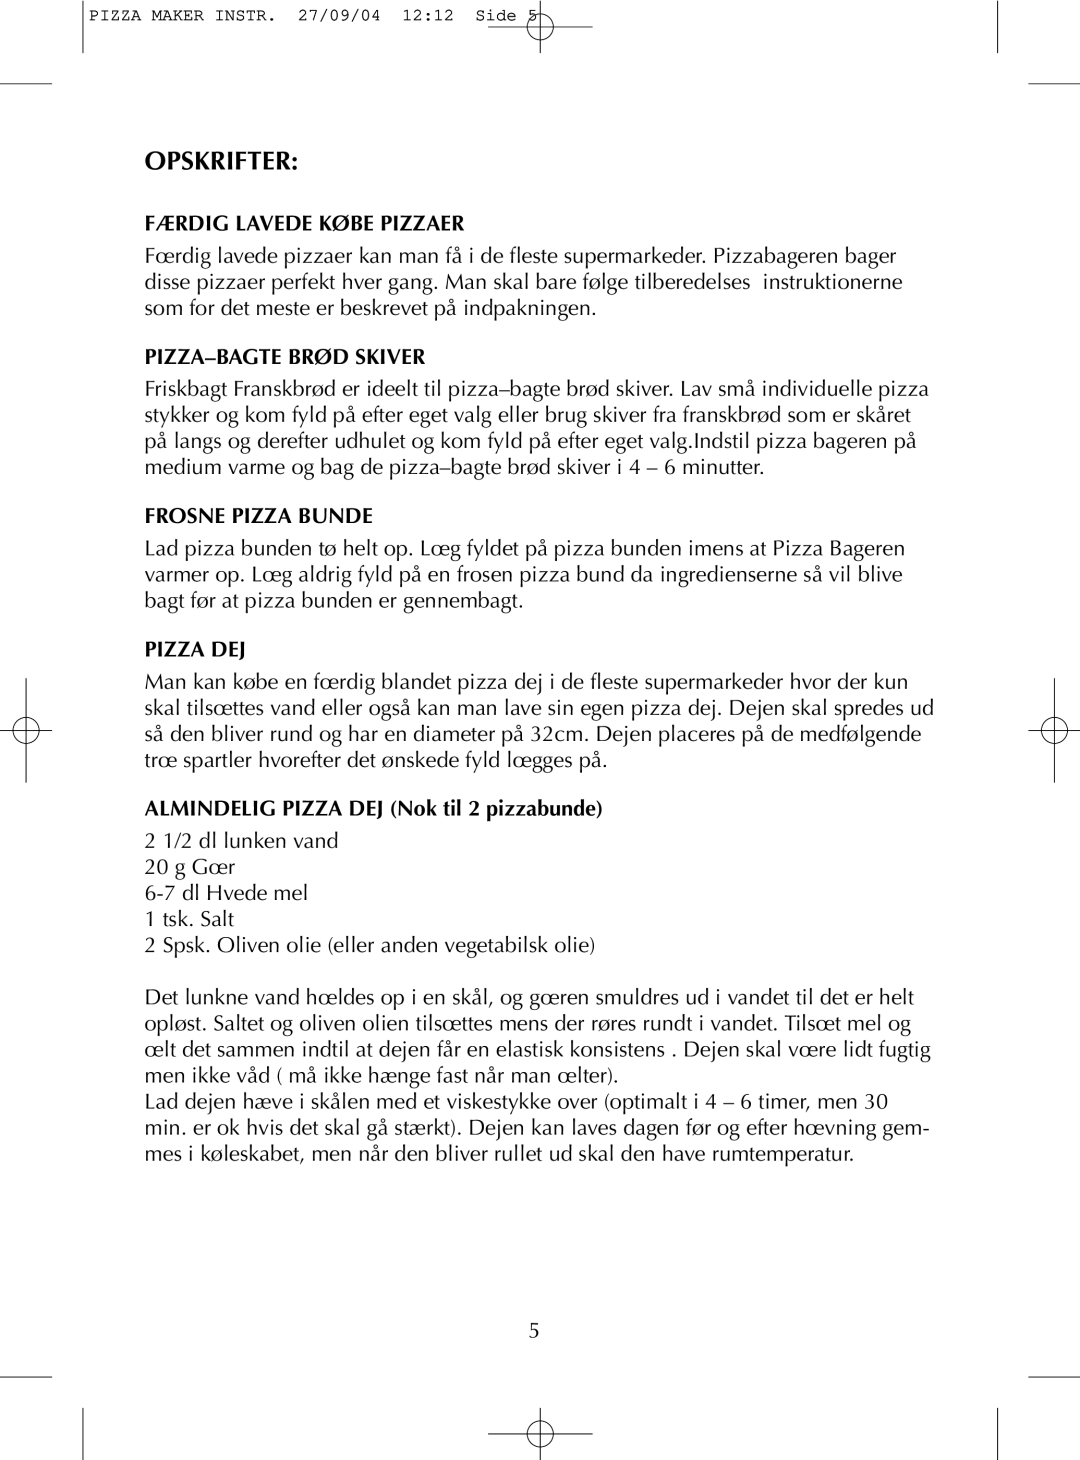 Melissa TS 040S manual Opskrifter, Færdig Lavede Købe Pizzaer, Pizza–Bagtebrød Skiver, Frosne Pizza Bunde, Pizza Dej 